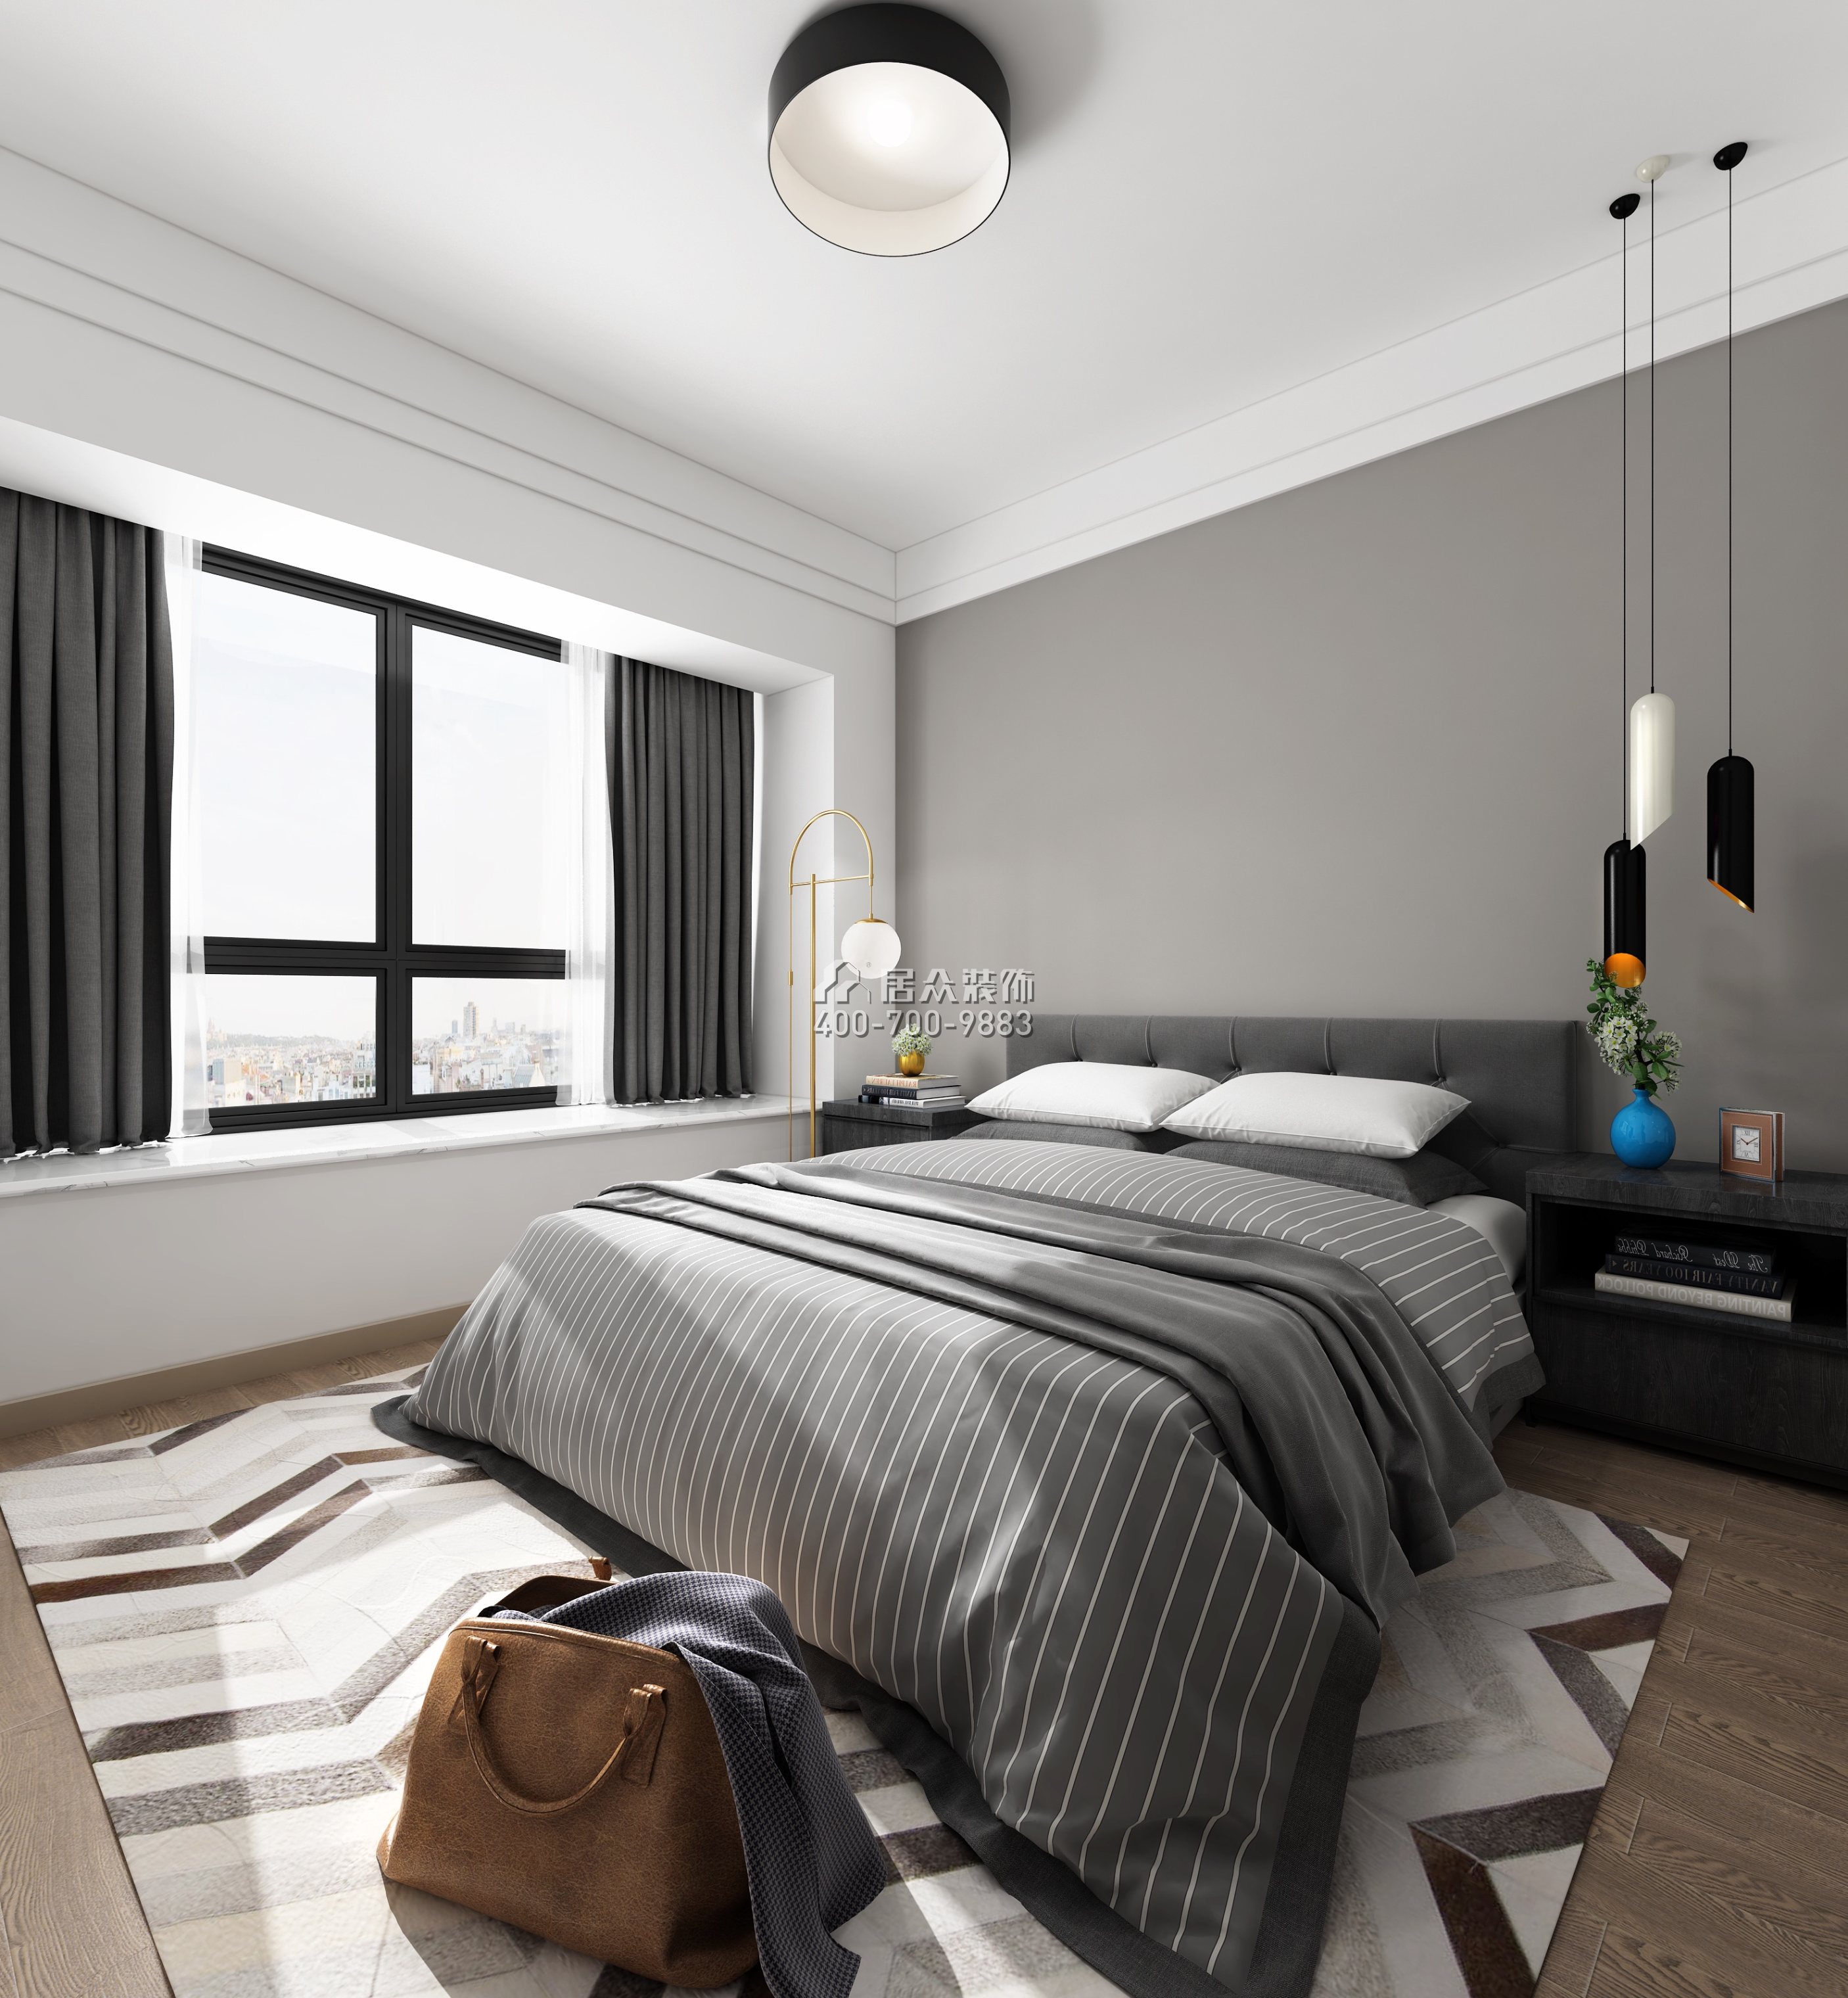 华发峰景湾216平方米现代简约风格平层户型卧室装修效果图